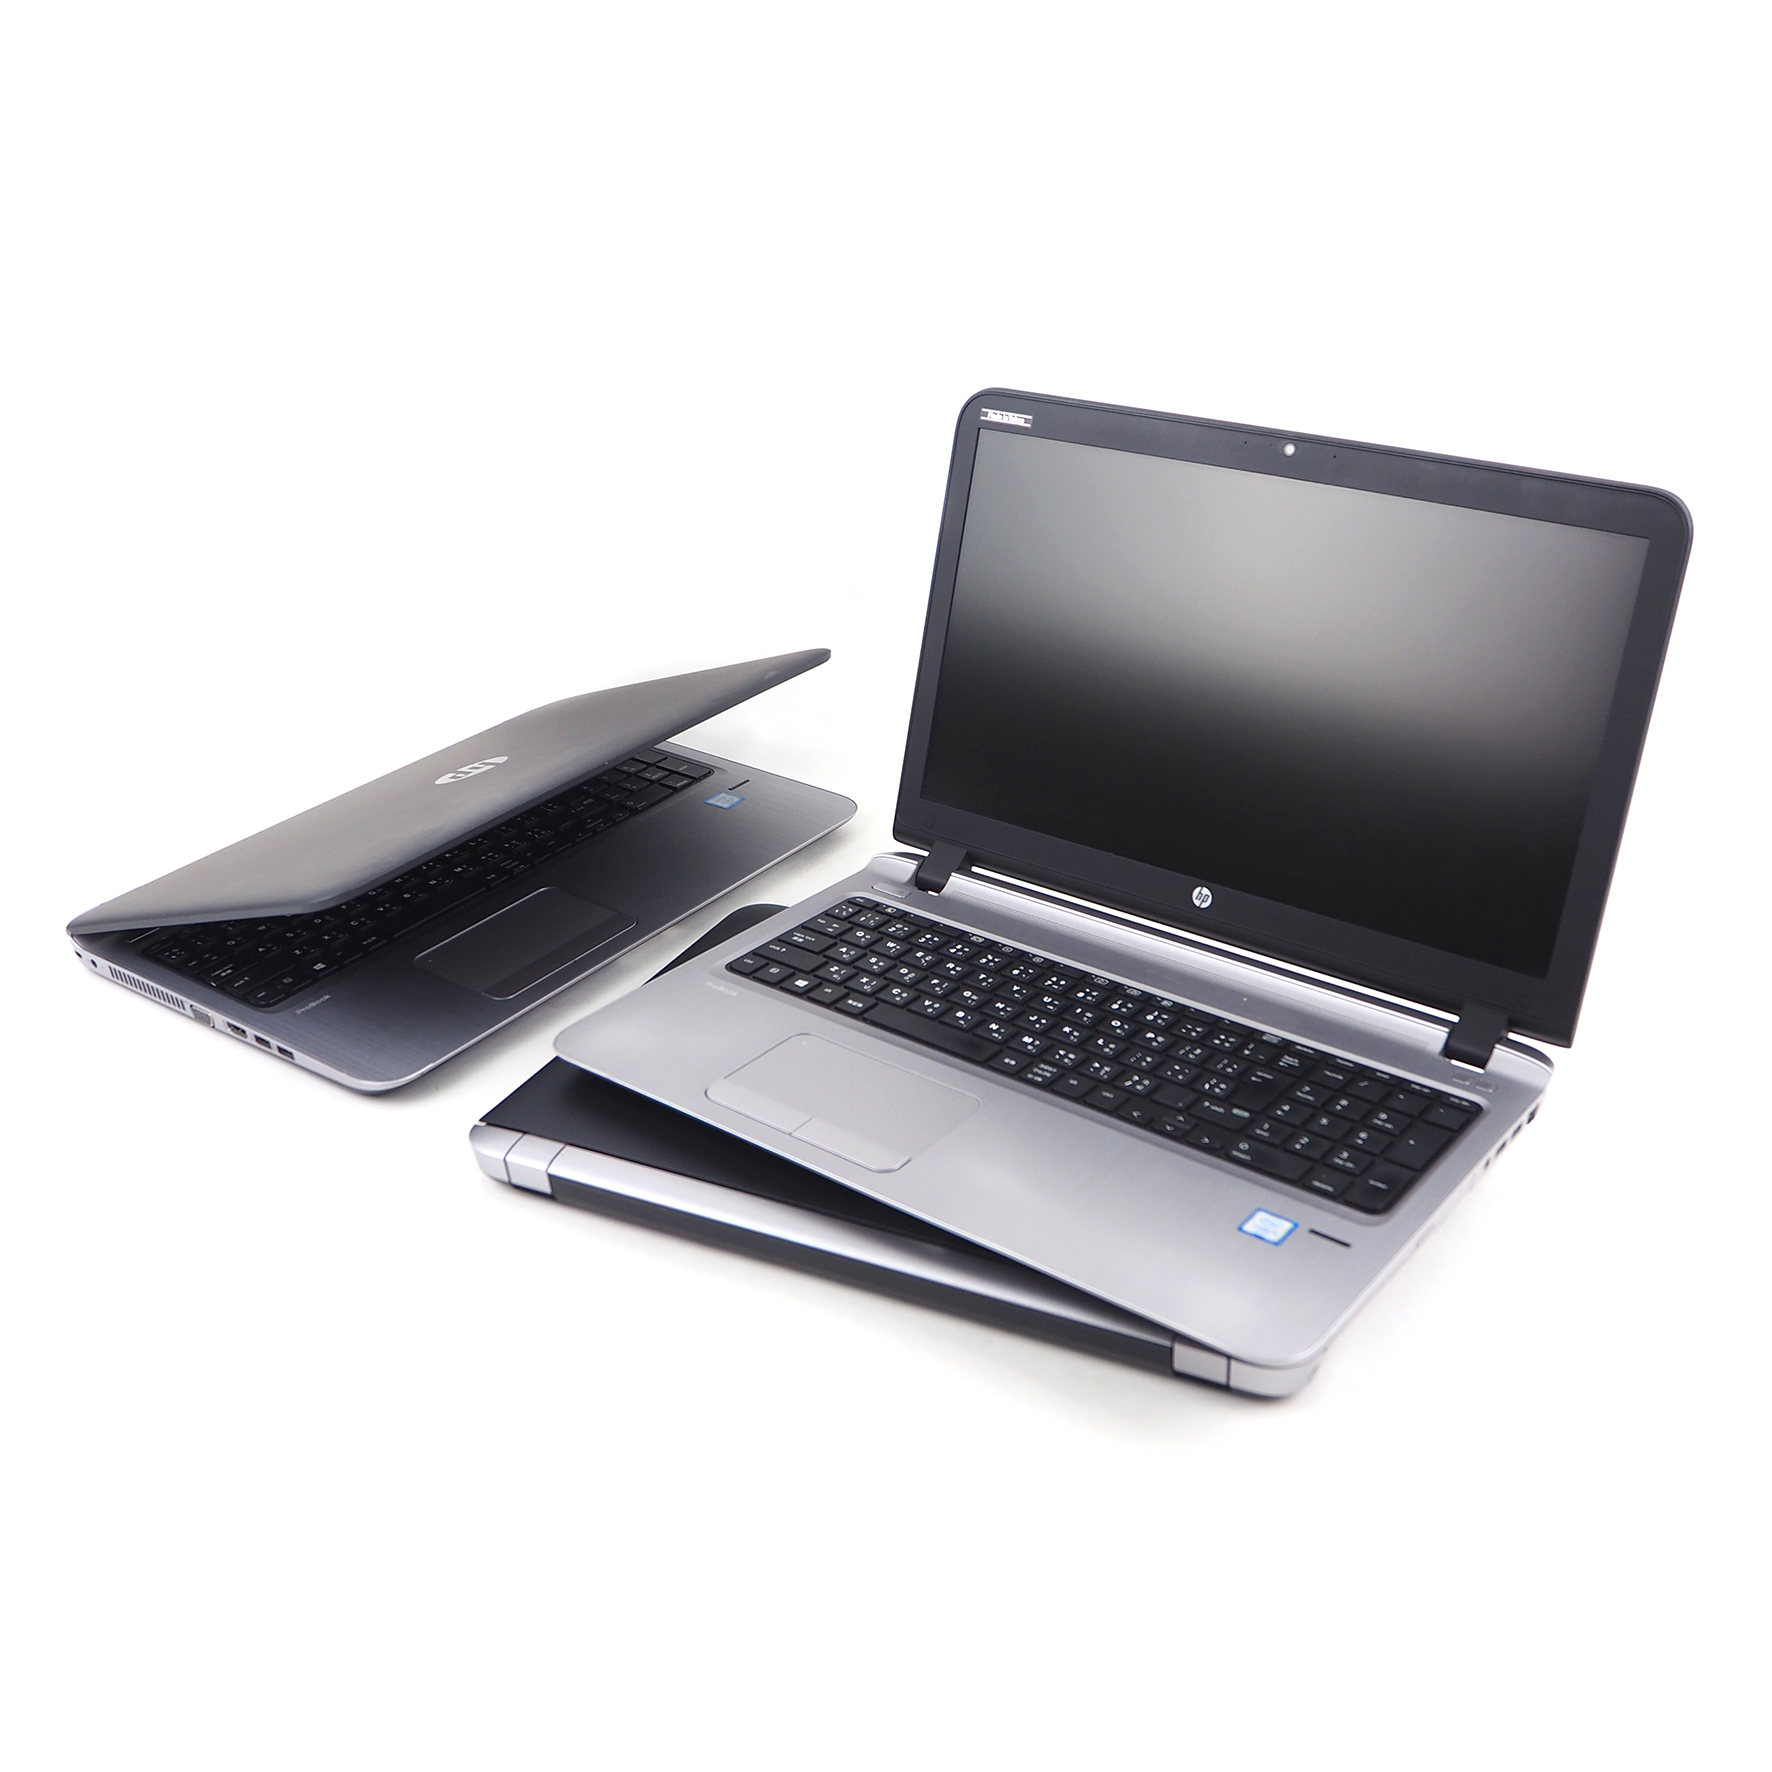 มุมมองเพิ่มเติมของสินค้า โน๊ตบุ๊ค HP Probook 450 G3 - Core i3 GEN 6 Ram 4 GB HDD 320GB มีกล้องในตัว Refhed laptop used notebook คอมพิวเตอร์ สภาพดี มีประกัน พร้อมบริการหลังการขาย By Totalsol